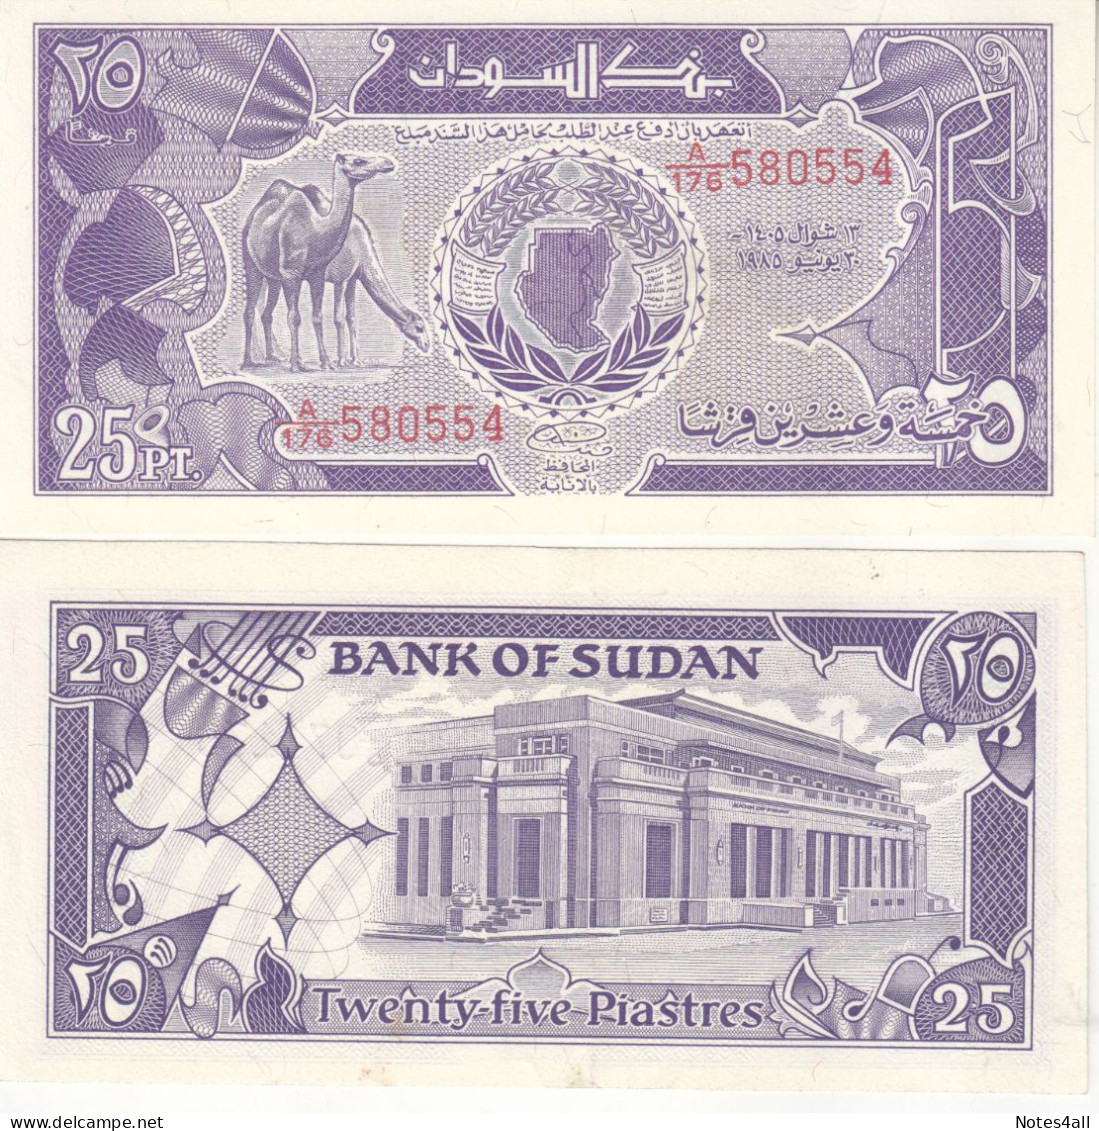 SUDAN 25 PT PIASTRES 1985 P-30 Au/UNC - Sudan